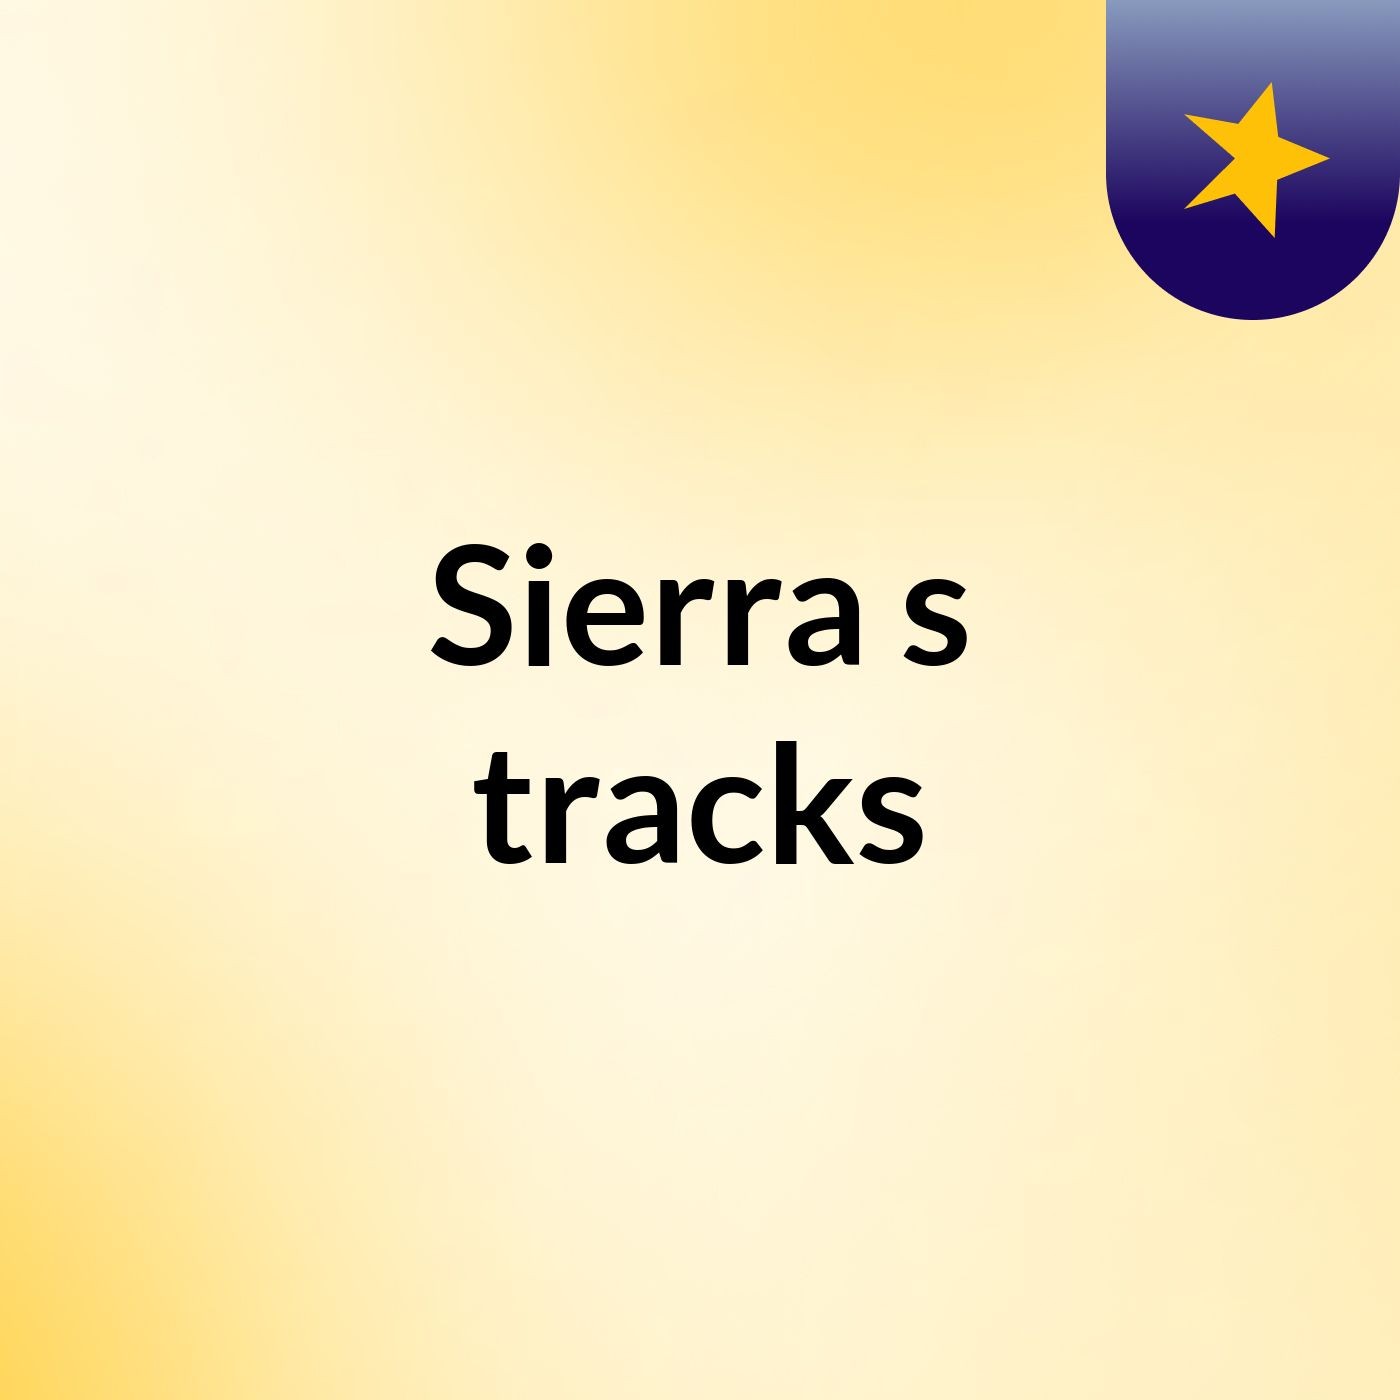 Sierra's tracks